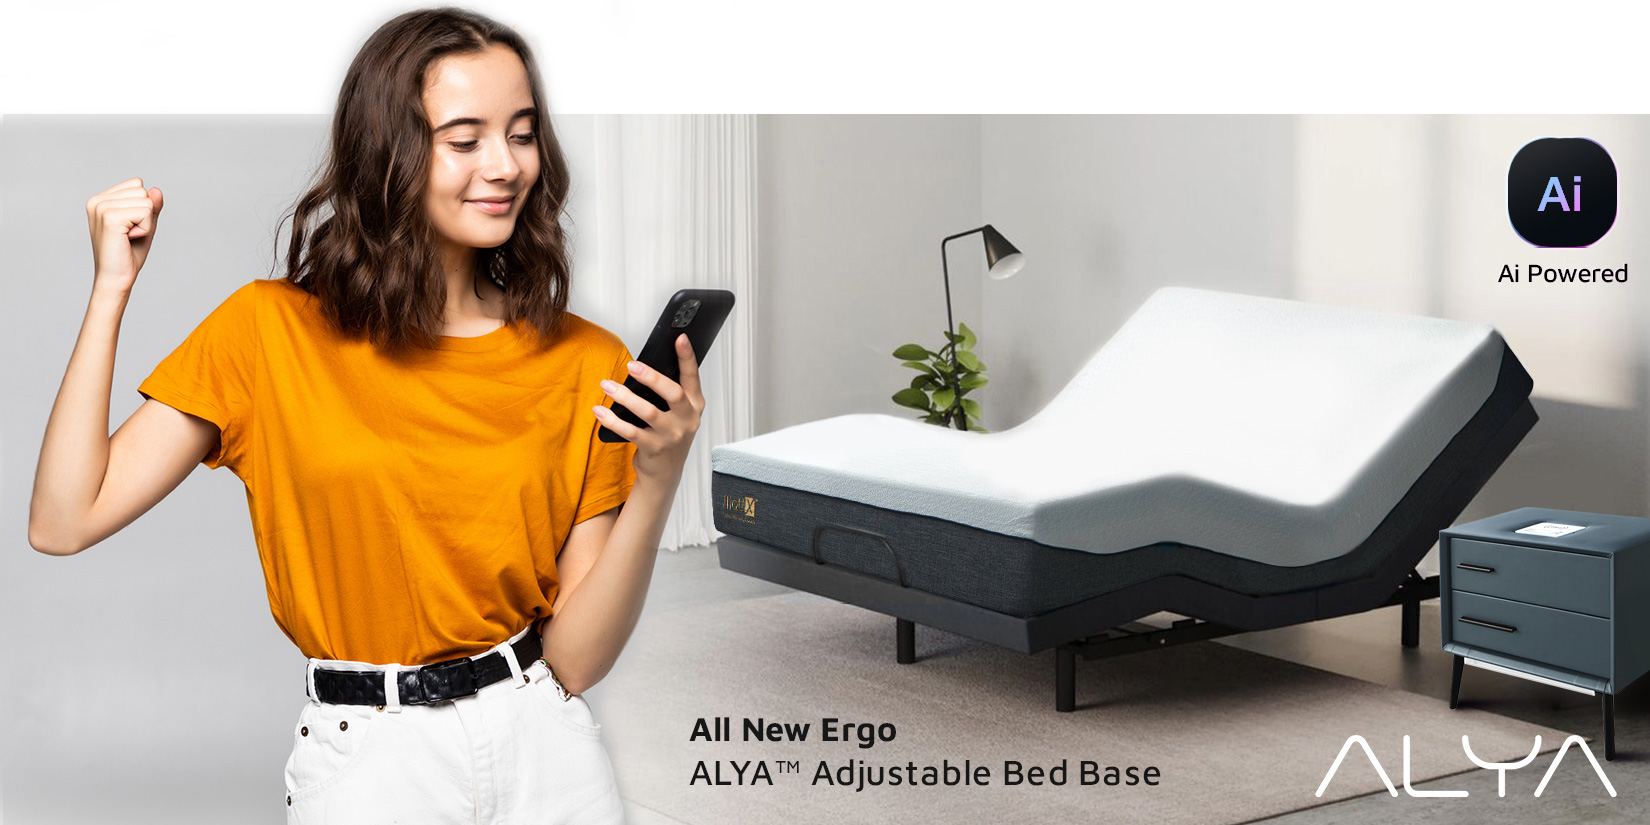 ALYA adjustable bed base operation app guide